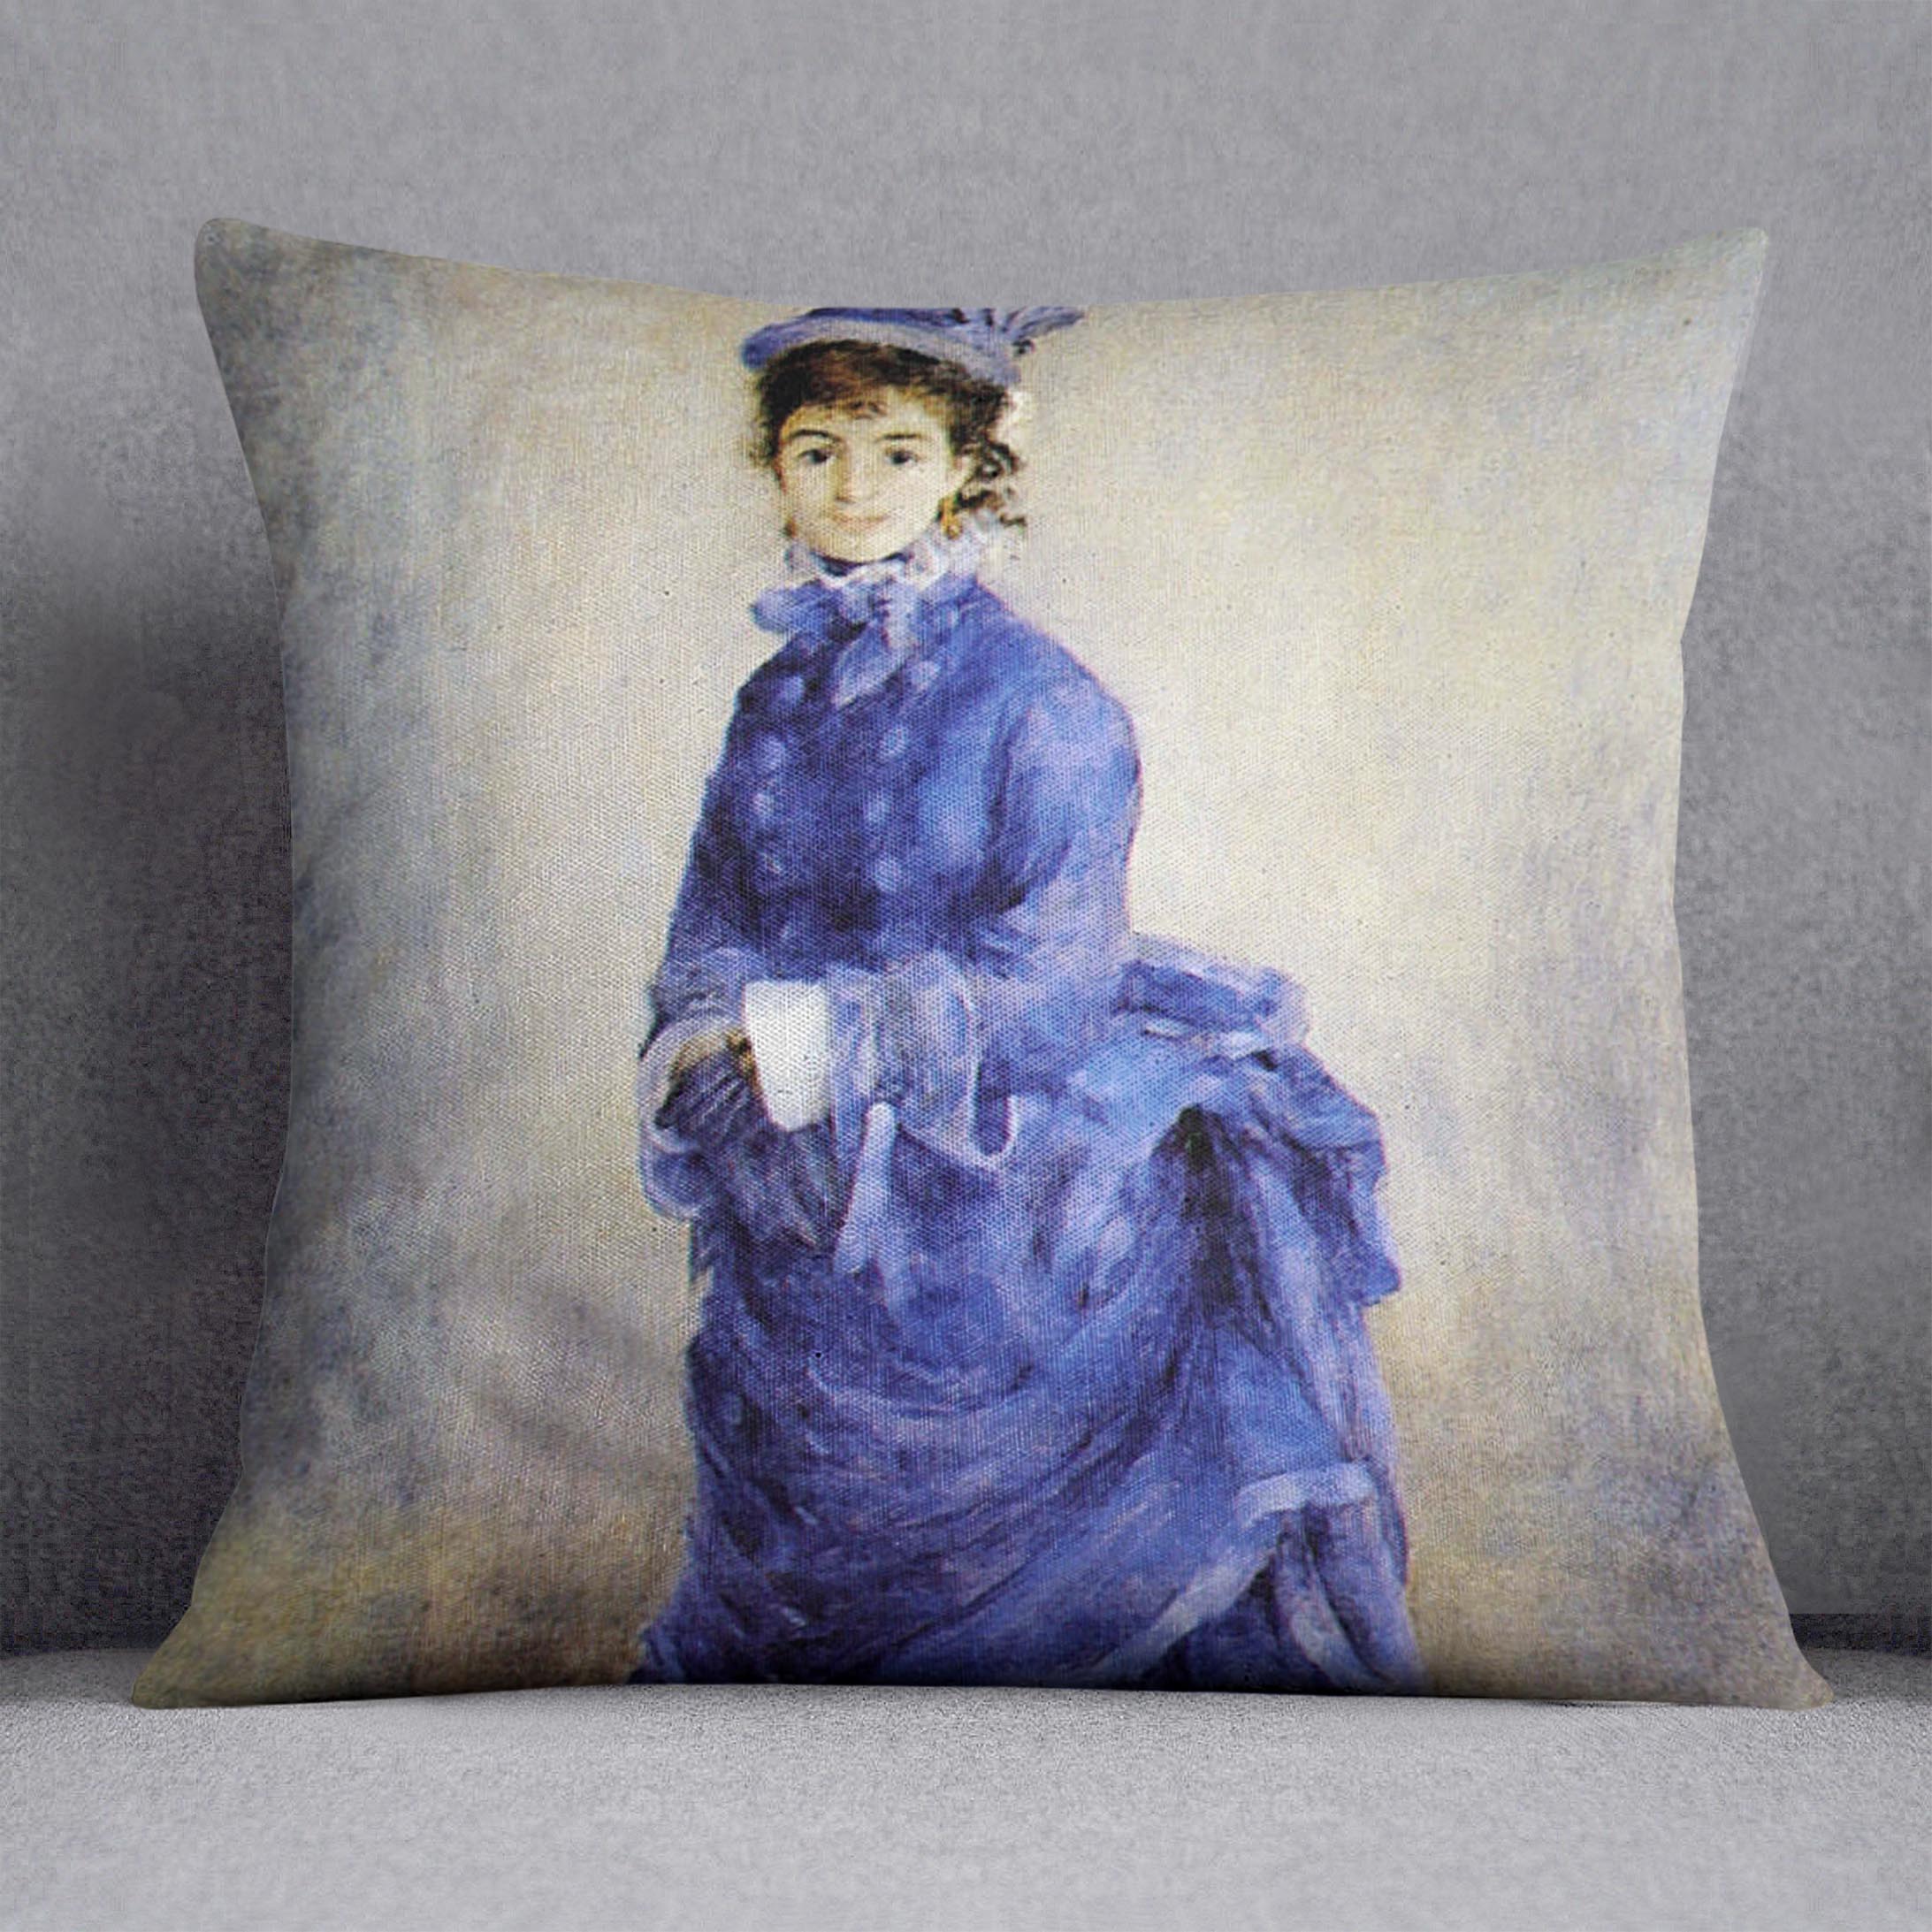 The parisian by Renoir Cushion